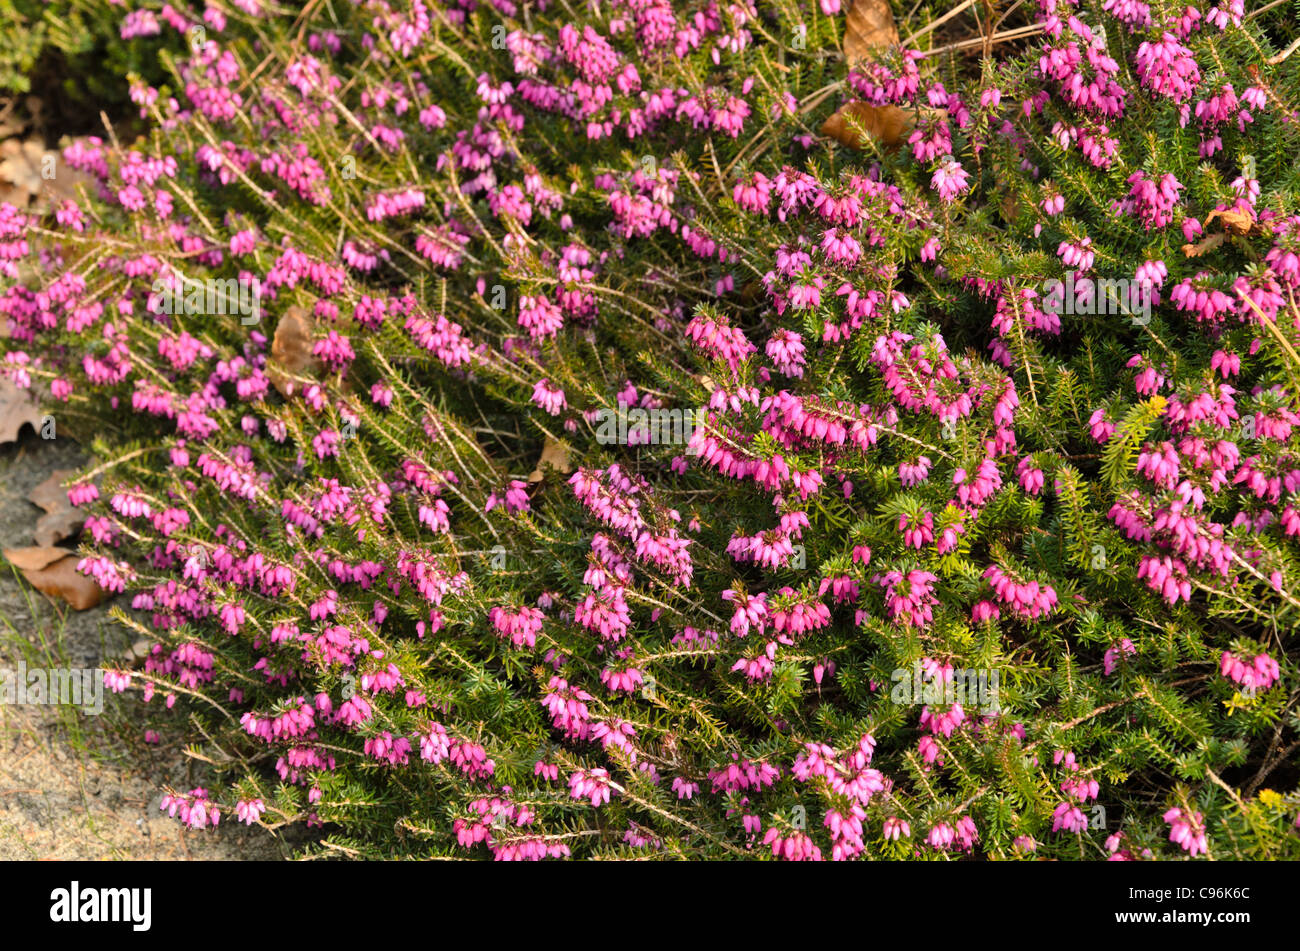 Winter heather (Erica carnea 'Winterfreude' syn. Erica herbacea 'Winterfreude') Stock Photo